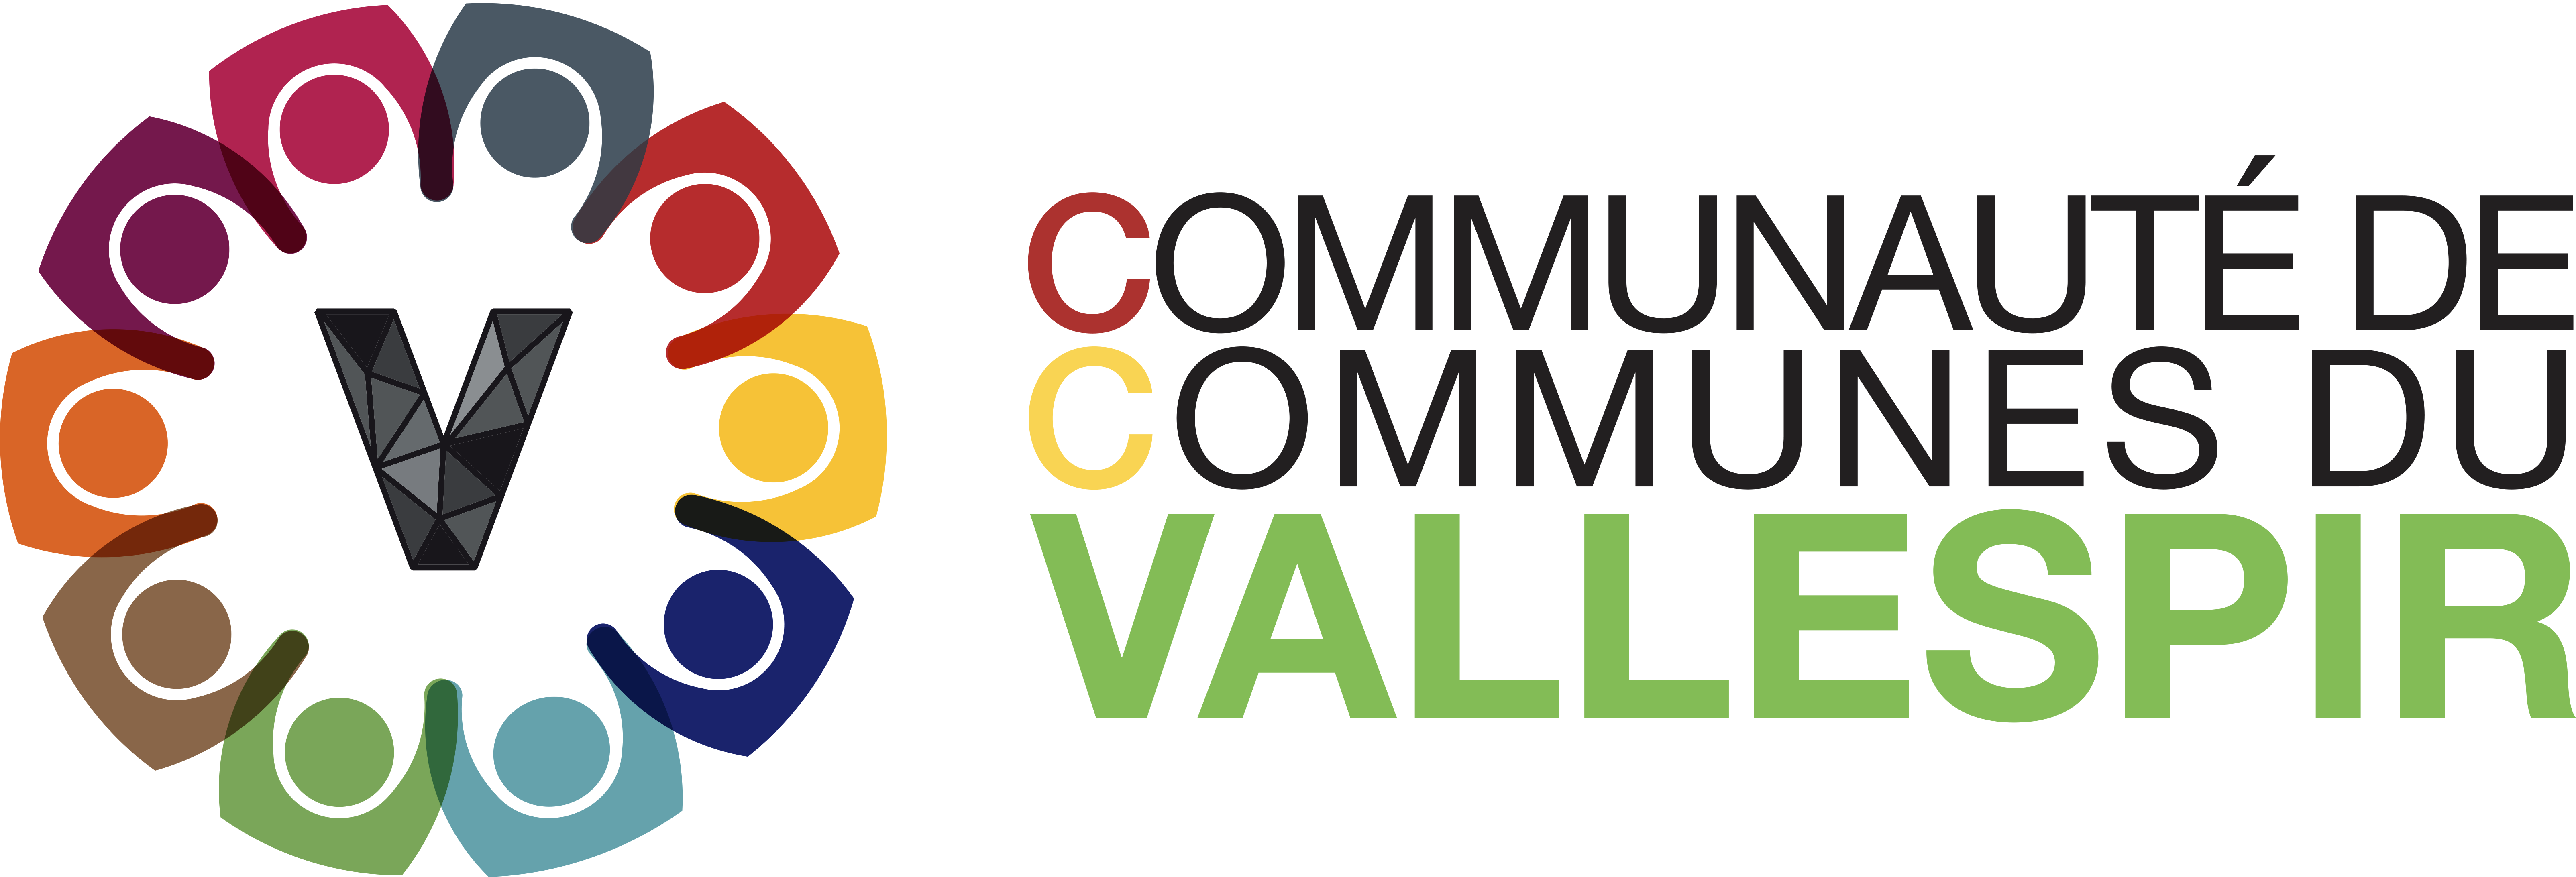 Communauté de communes Vallespir